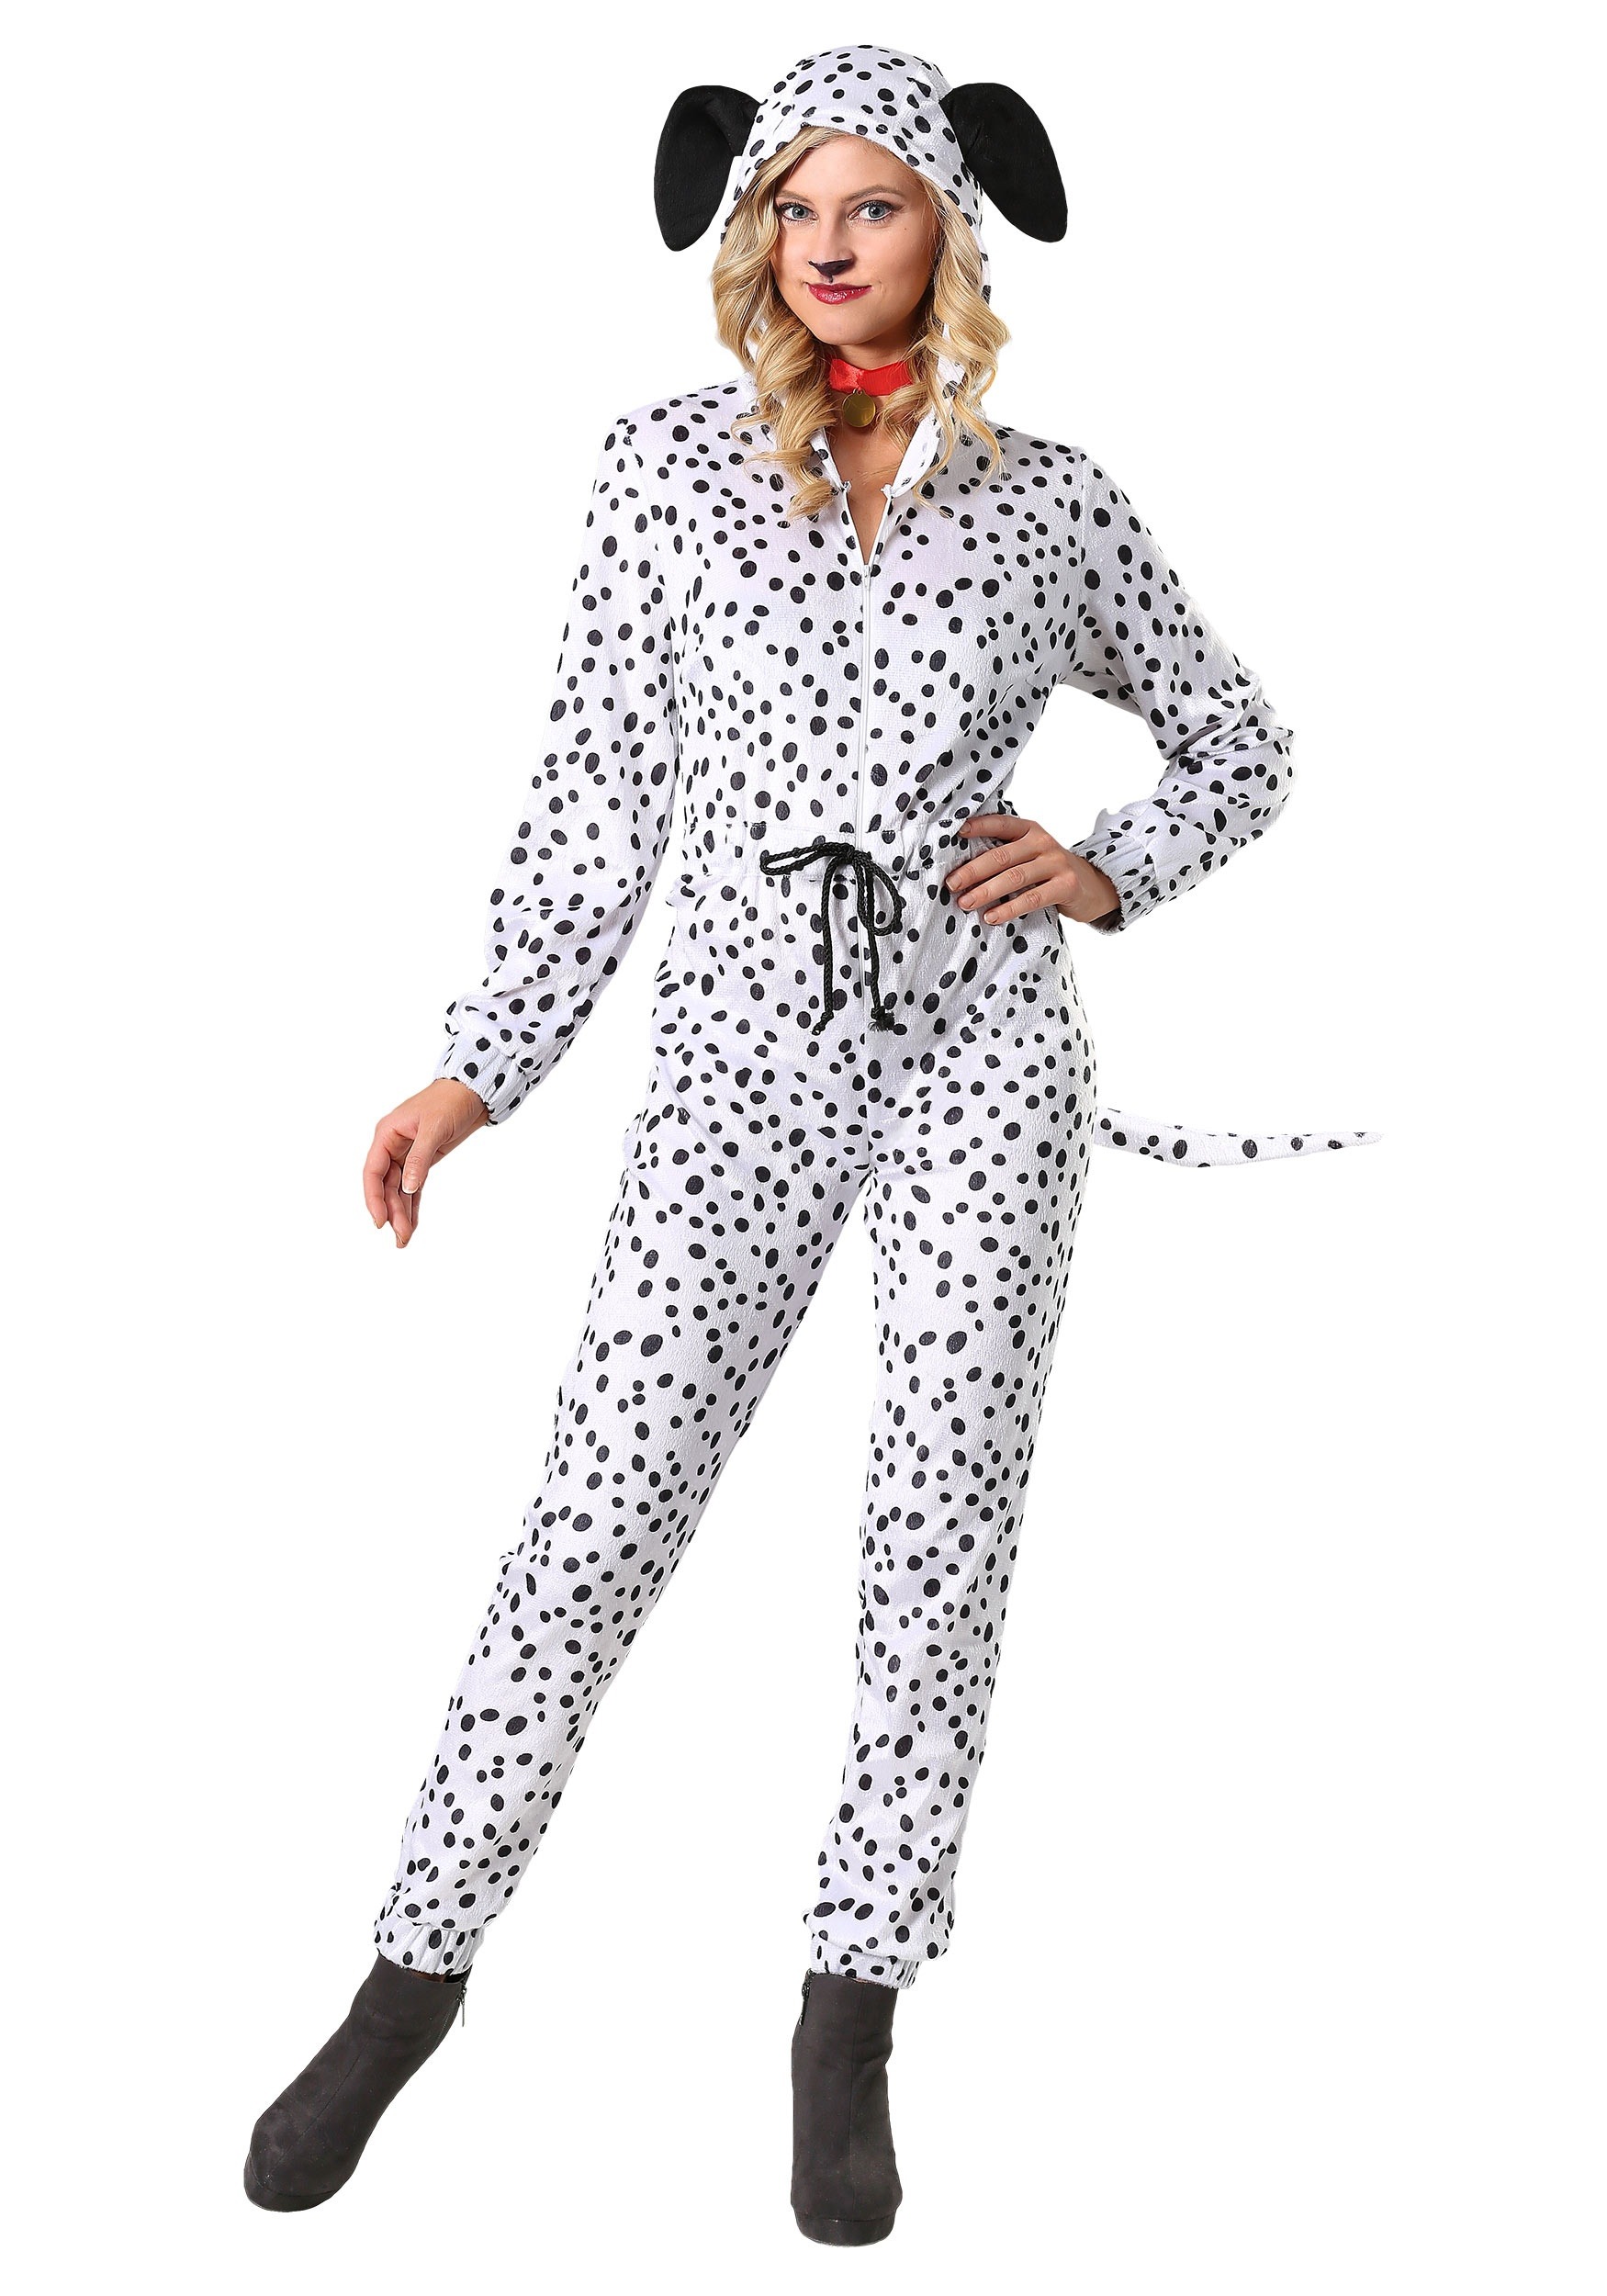 Women’s Cozy Dalmatian Costume Jumpsuit